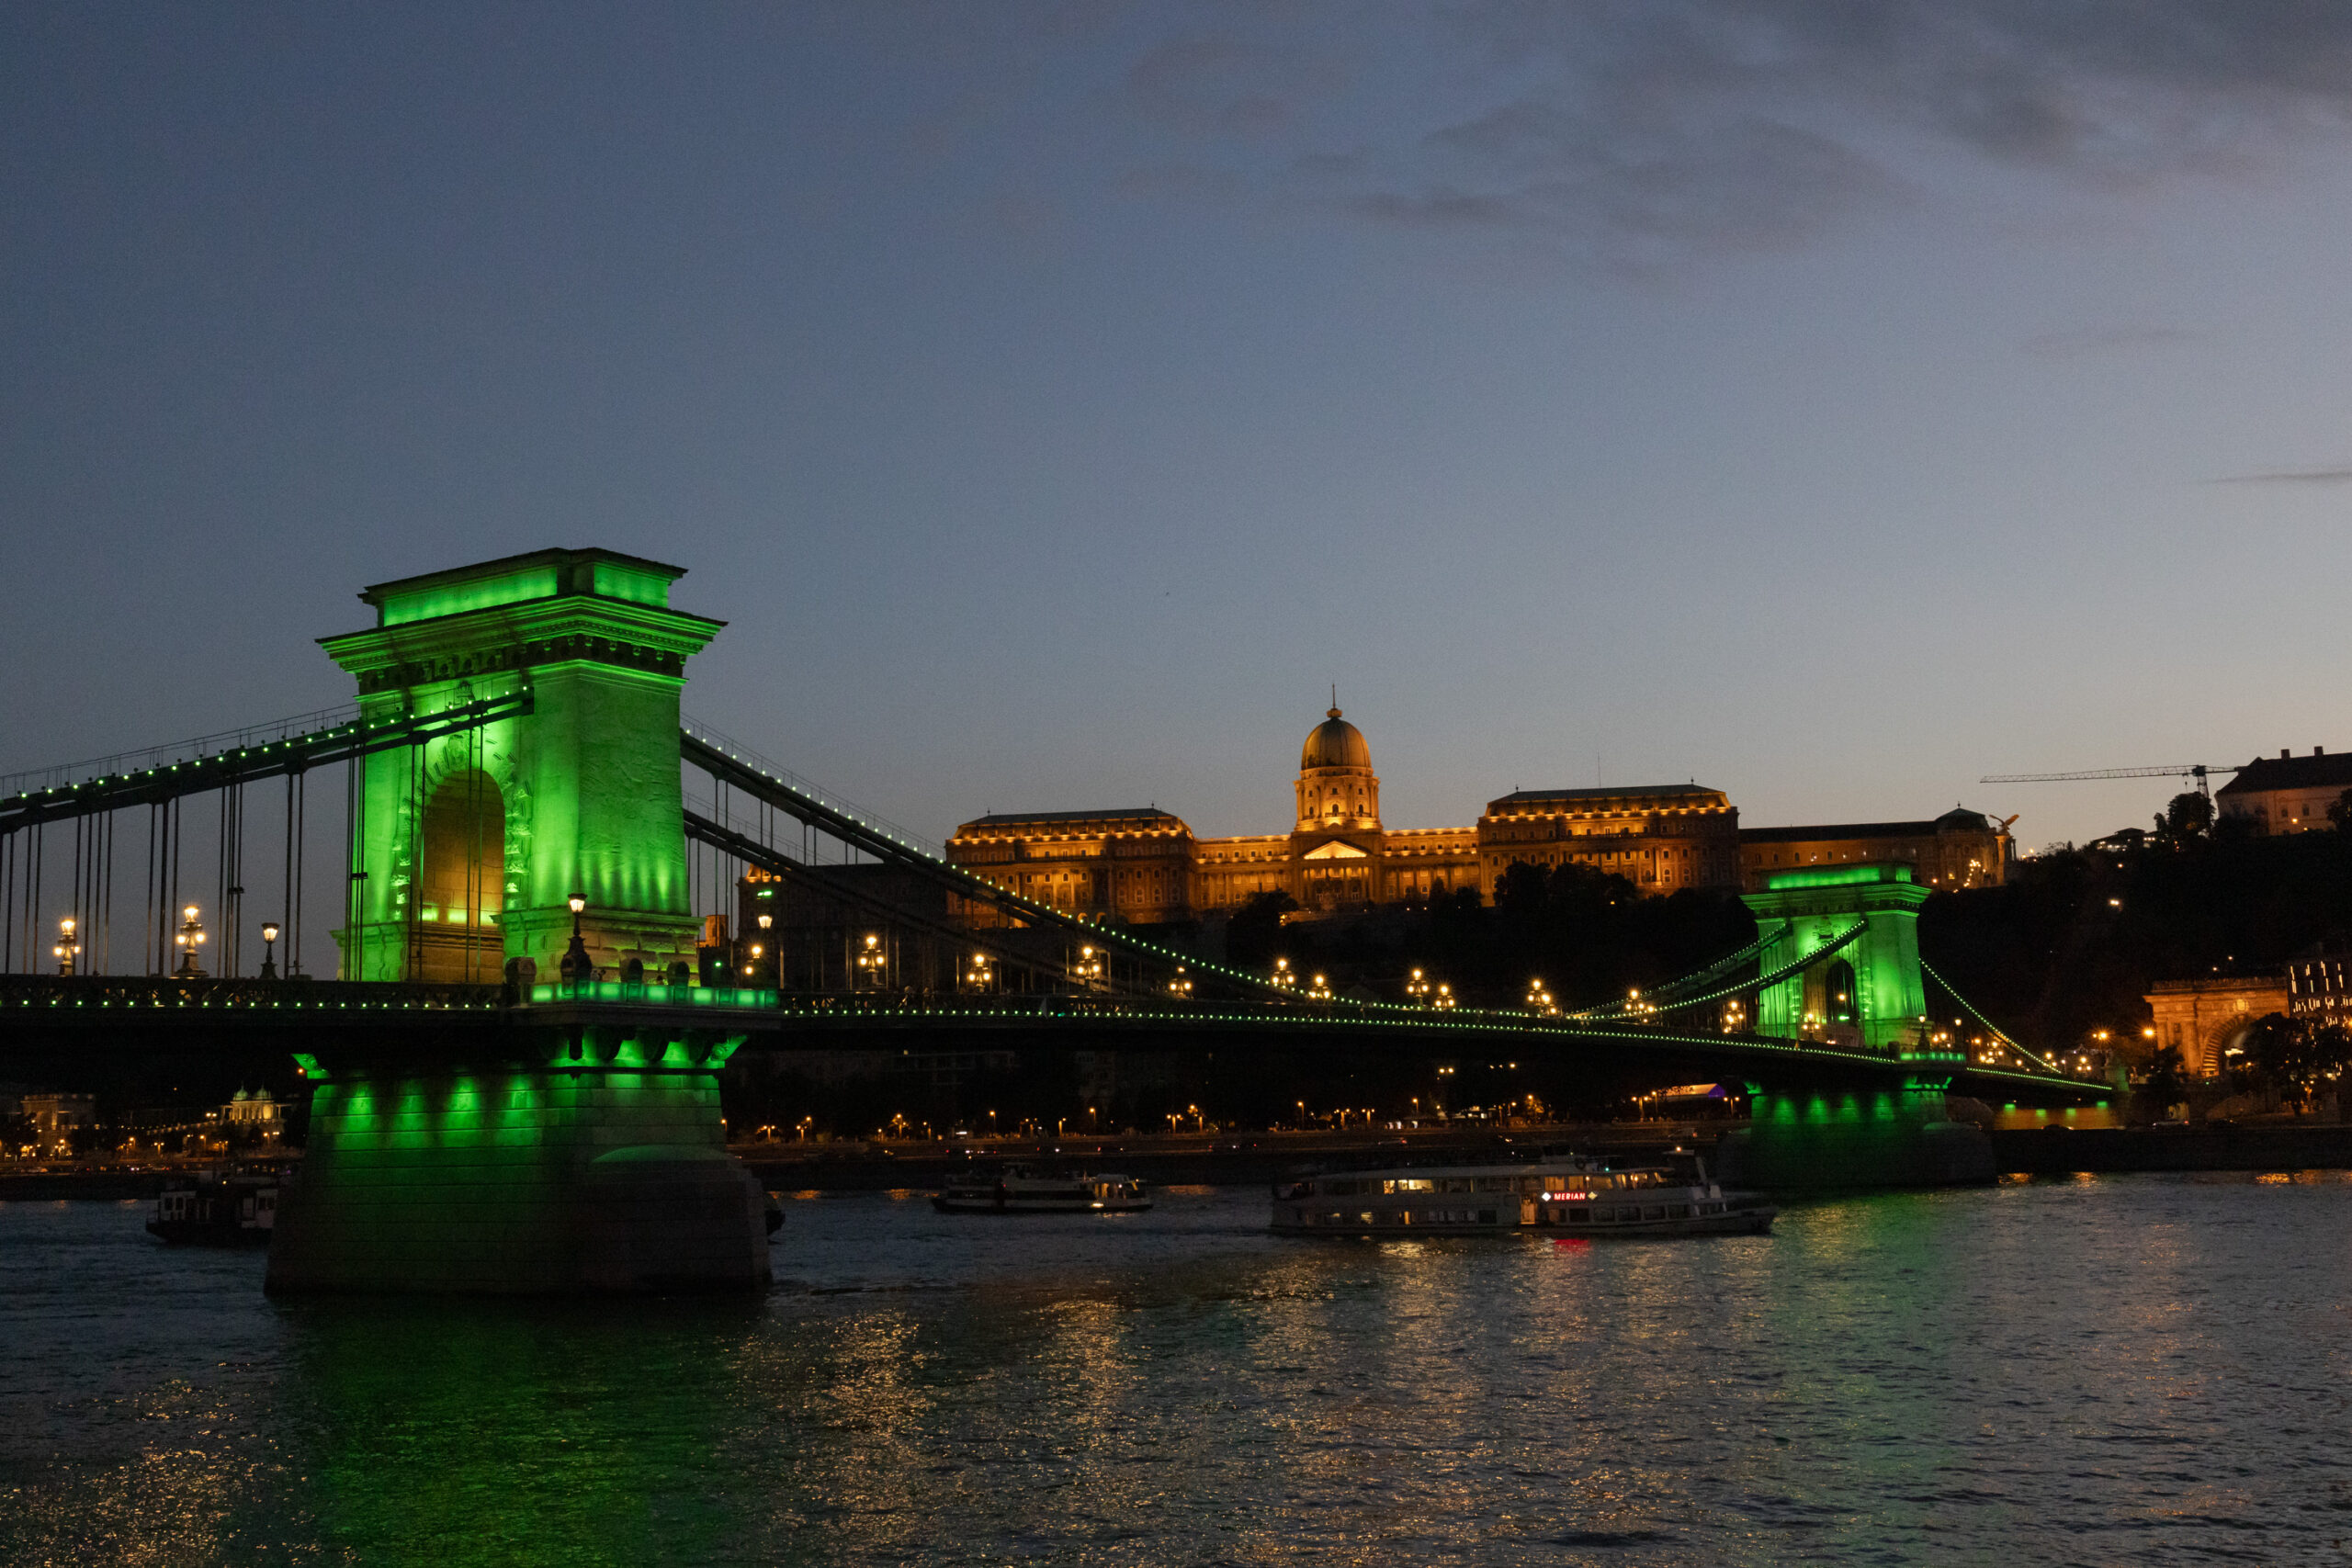 ฮังการีจัดเทศกาลสะพานโซ่ ฉลอง 'บูดาเปสต์' ก่อตั้งครบ 150 ปี